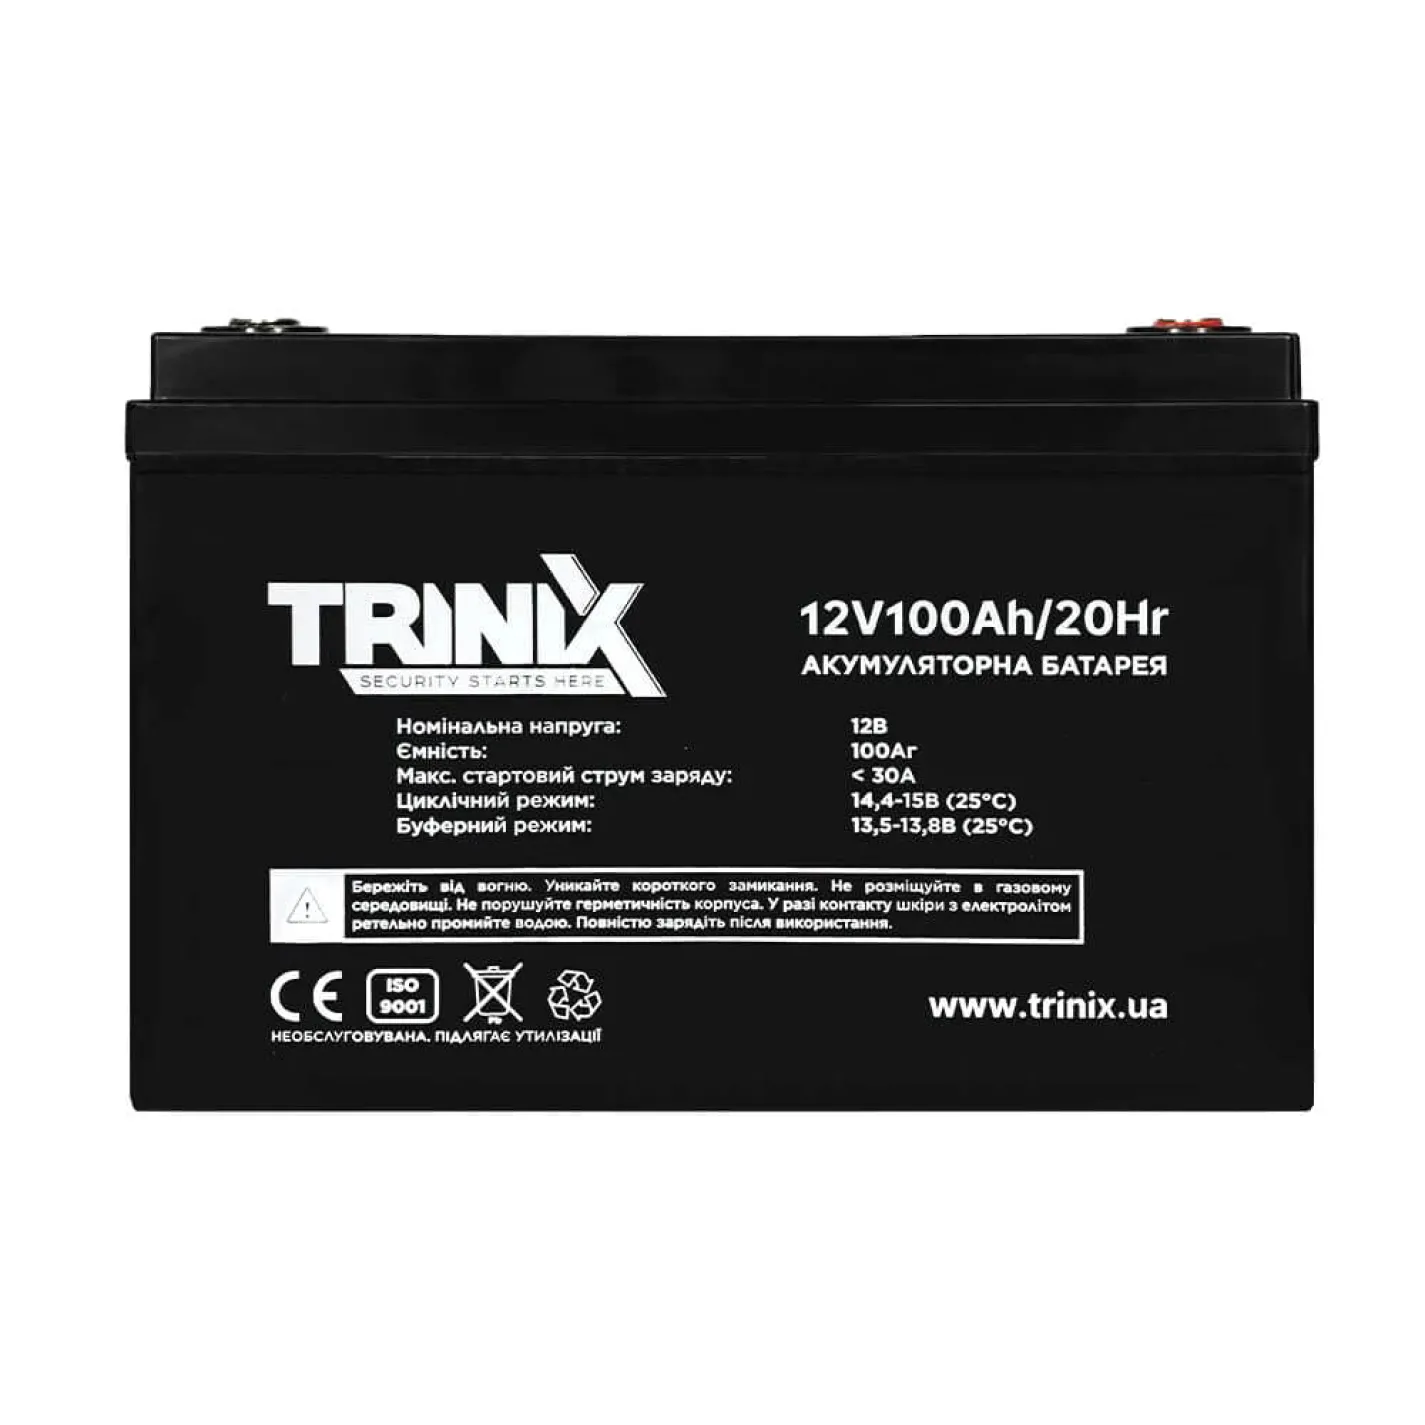 Акумуляторна батарея свинцево-кислотна Trinix 12V100Ah/20Hr AGM 12В 100Аг - Фото 1